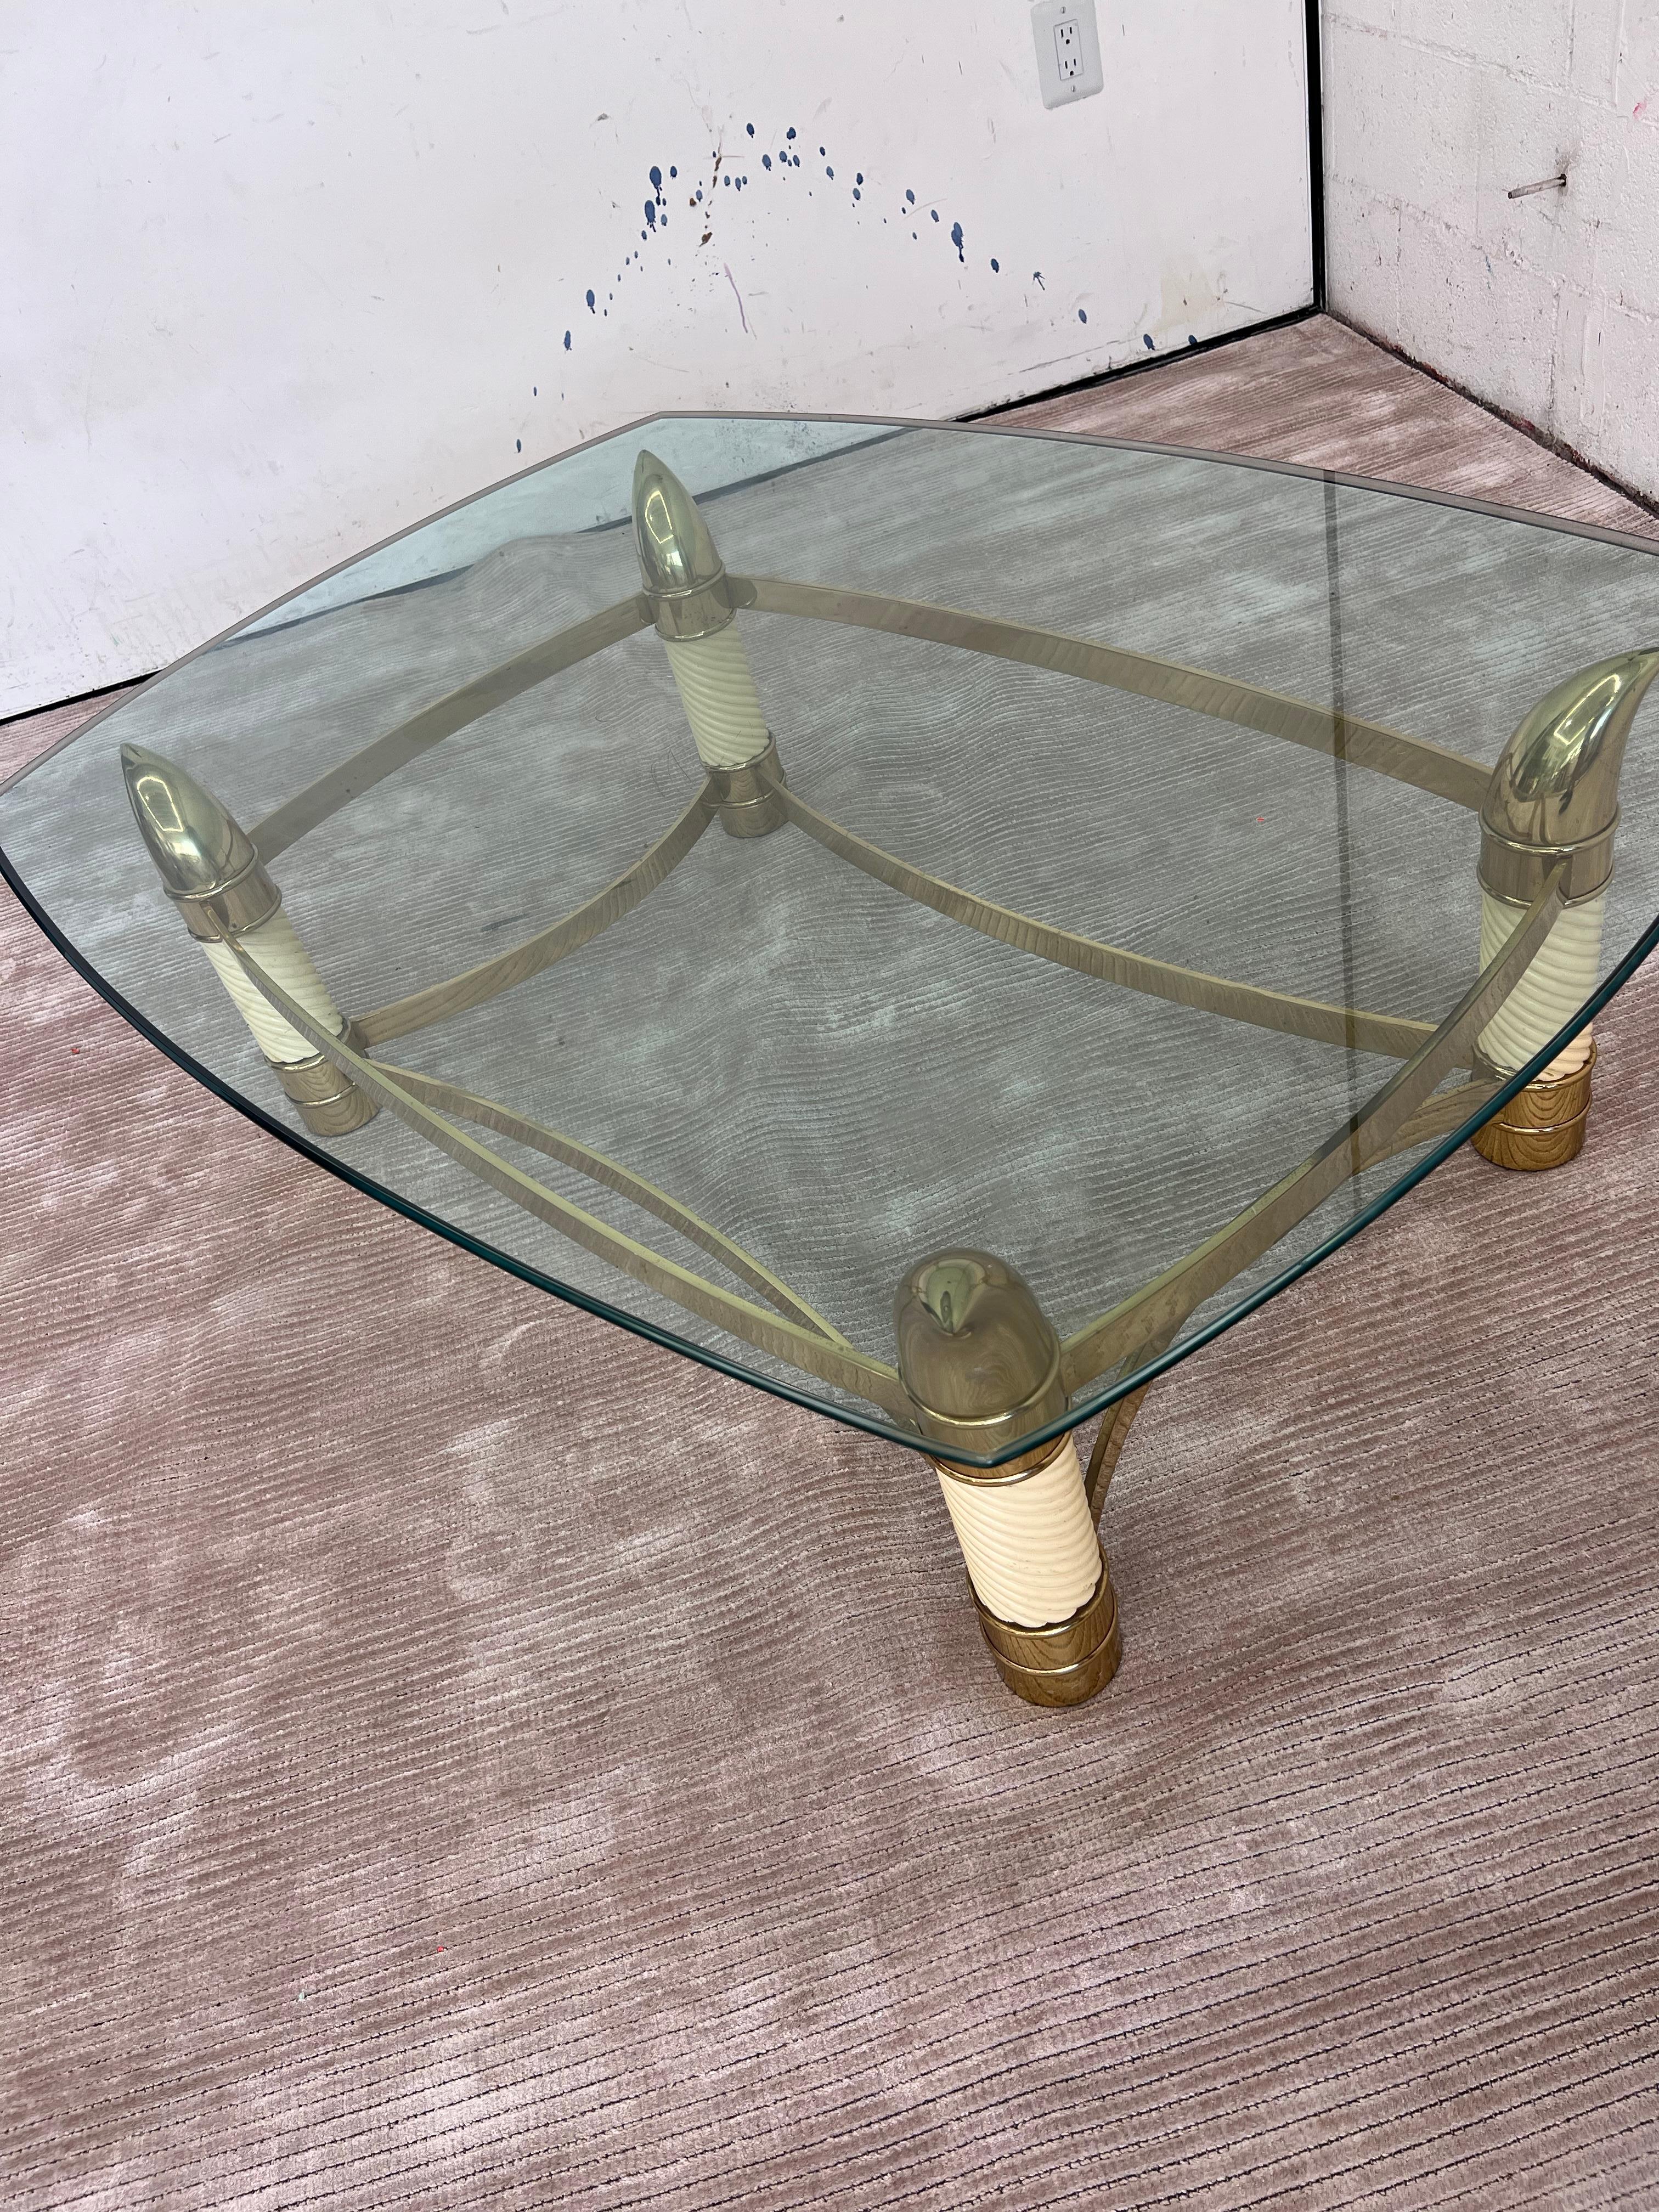 Élégante table en laiton massif et laque ivoire avec plateau en verre biseauté à coins arrondis, très joliment ornée de fausses défenses en ivoire et en laiton, inspirée de l'incroyable ligne d'œuvres sculpturales en céramique de Tommaso Barbi, de